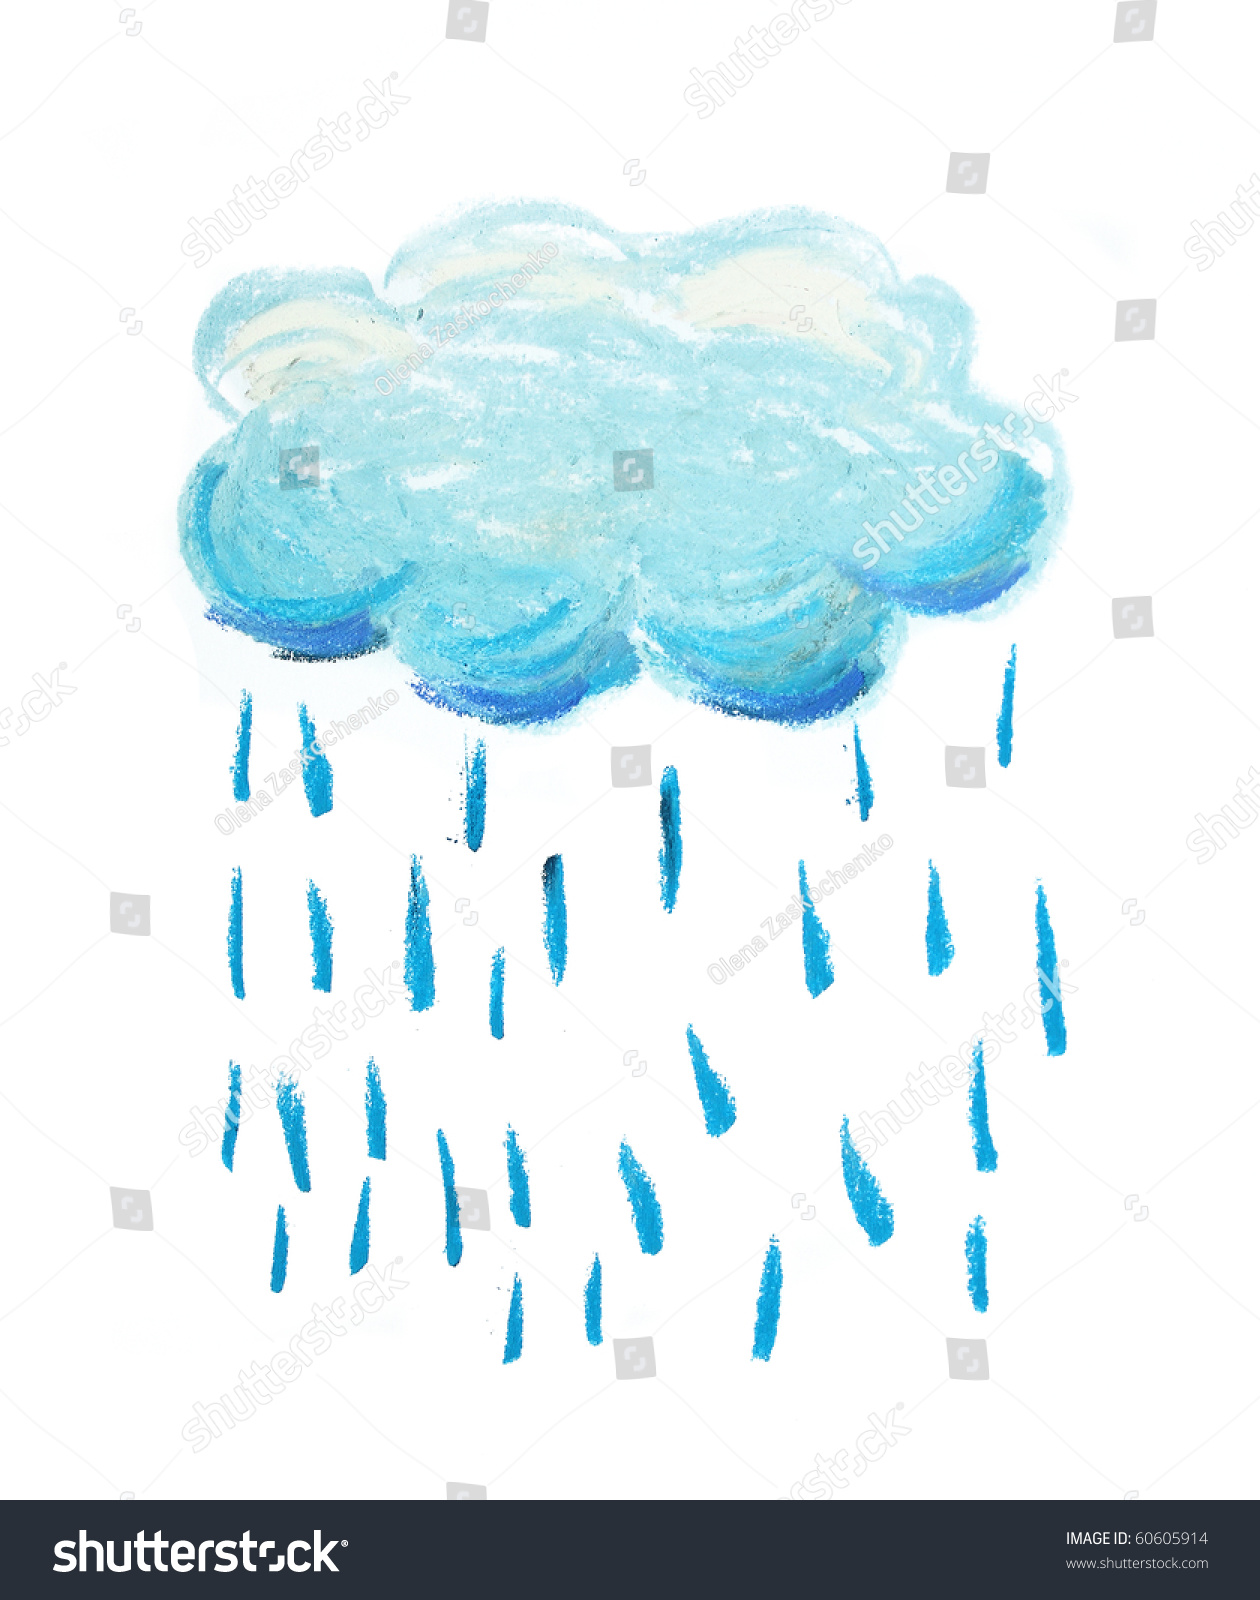 Облачко для рисования дождика